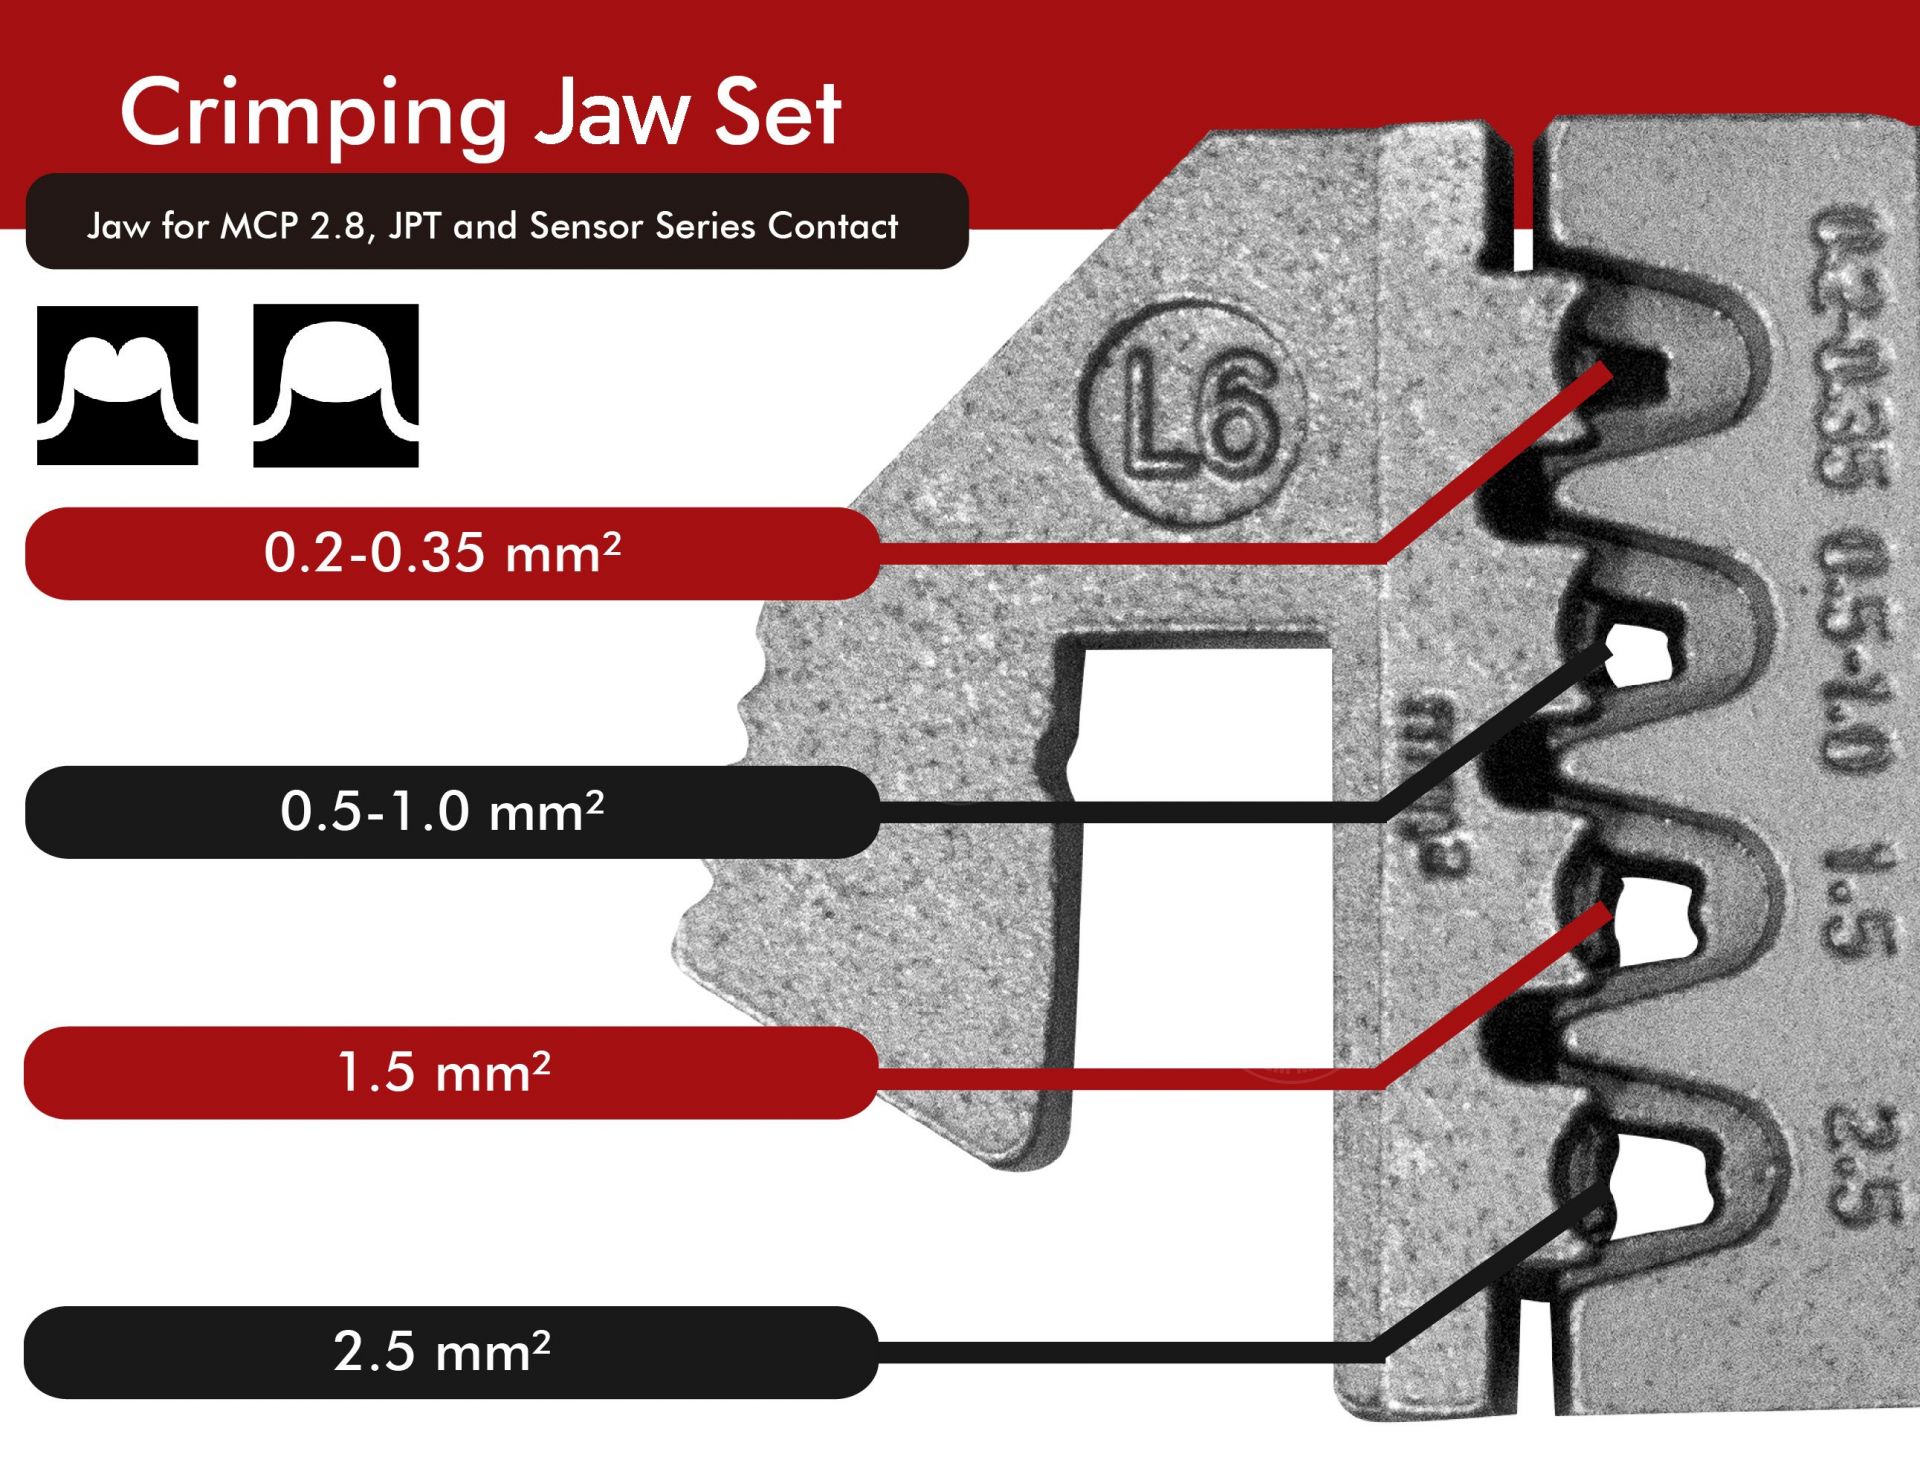 J12JL6-Jaw-crimp-crimping-crimp tool-crimping tool-crimp wire-ferrule crimp-ratchet crimp-Taiwan Manufacturer-hsunwang-licrim-hsunwang.com